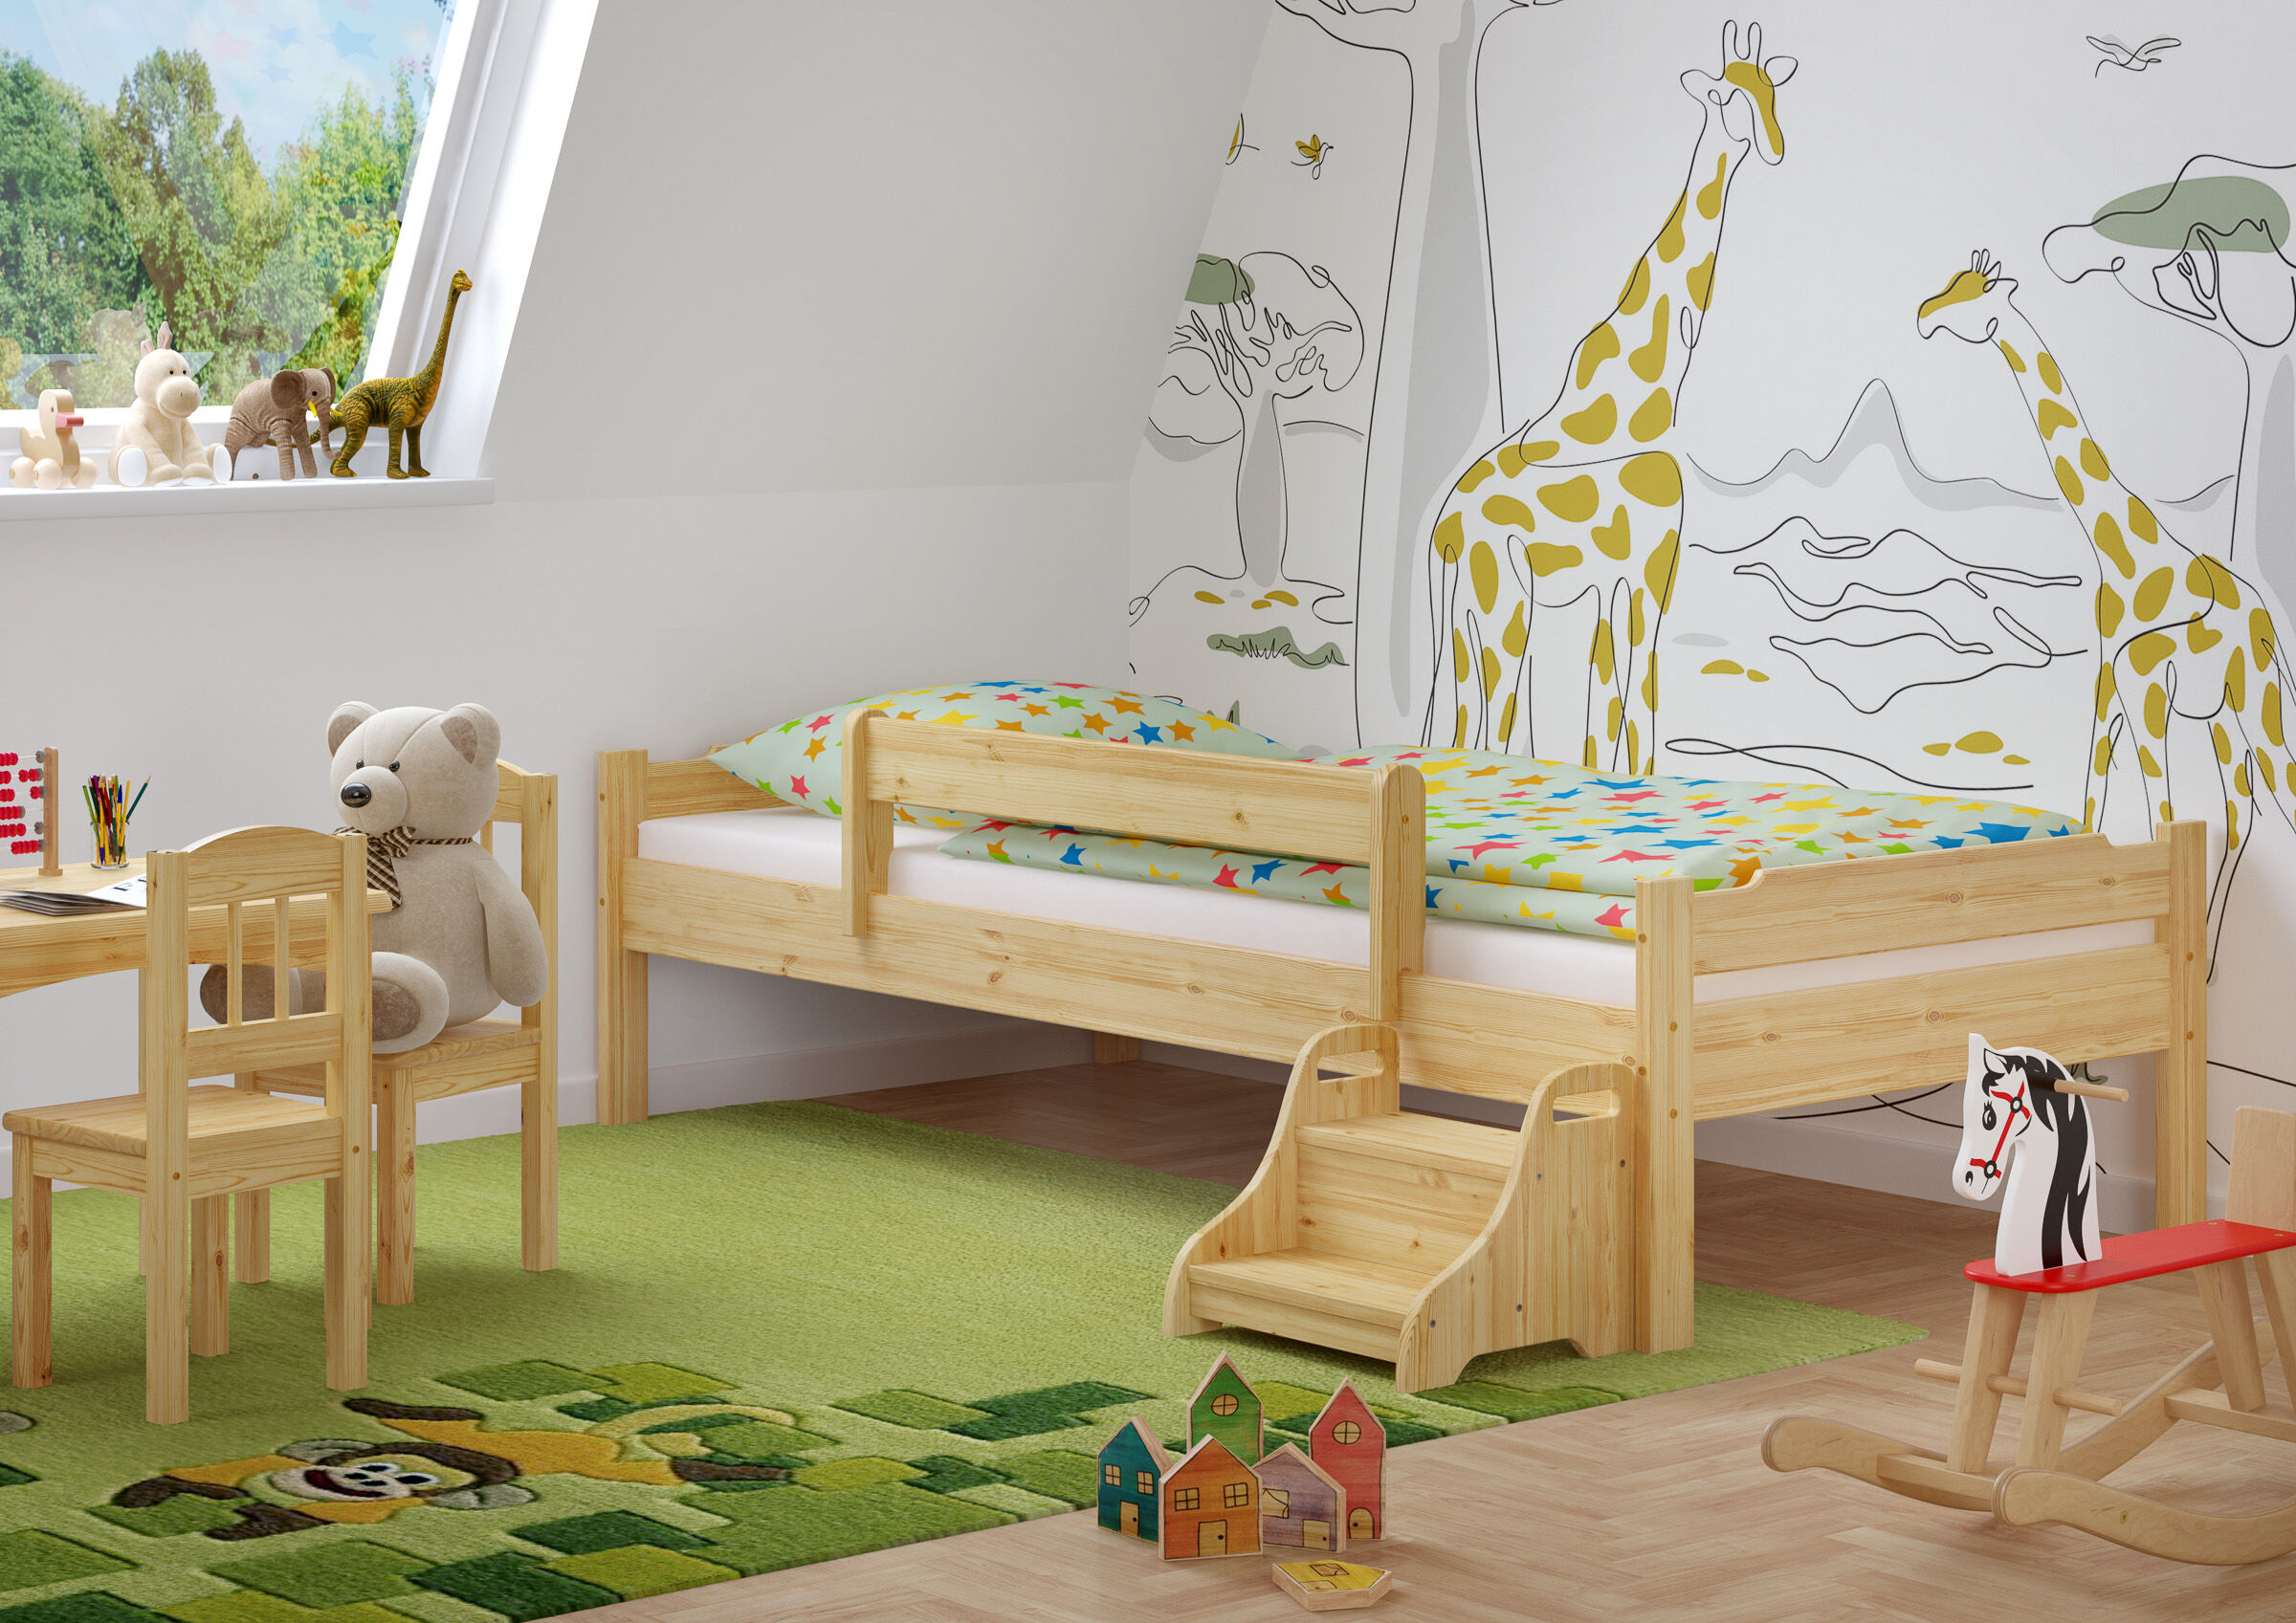 Kinderbett mit Sicherung und Treppchen